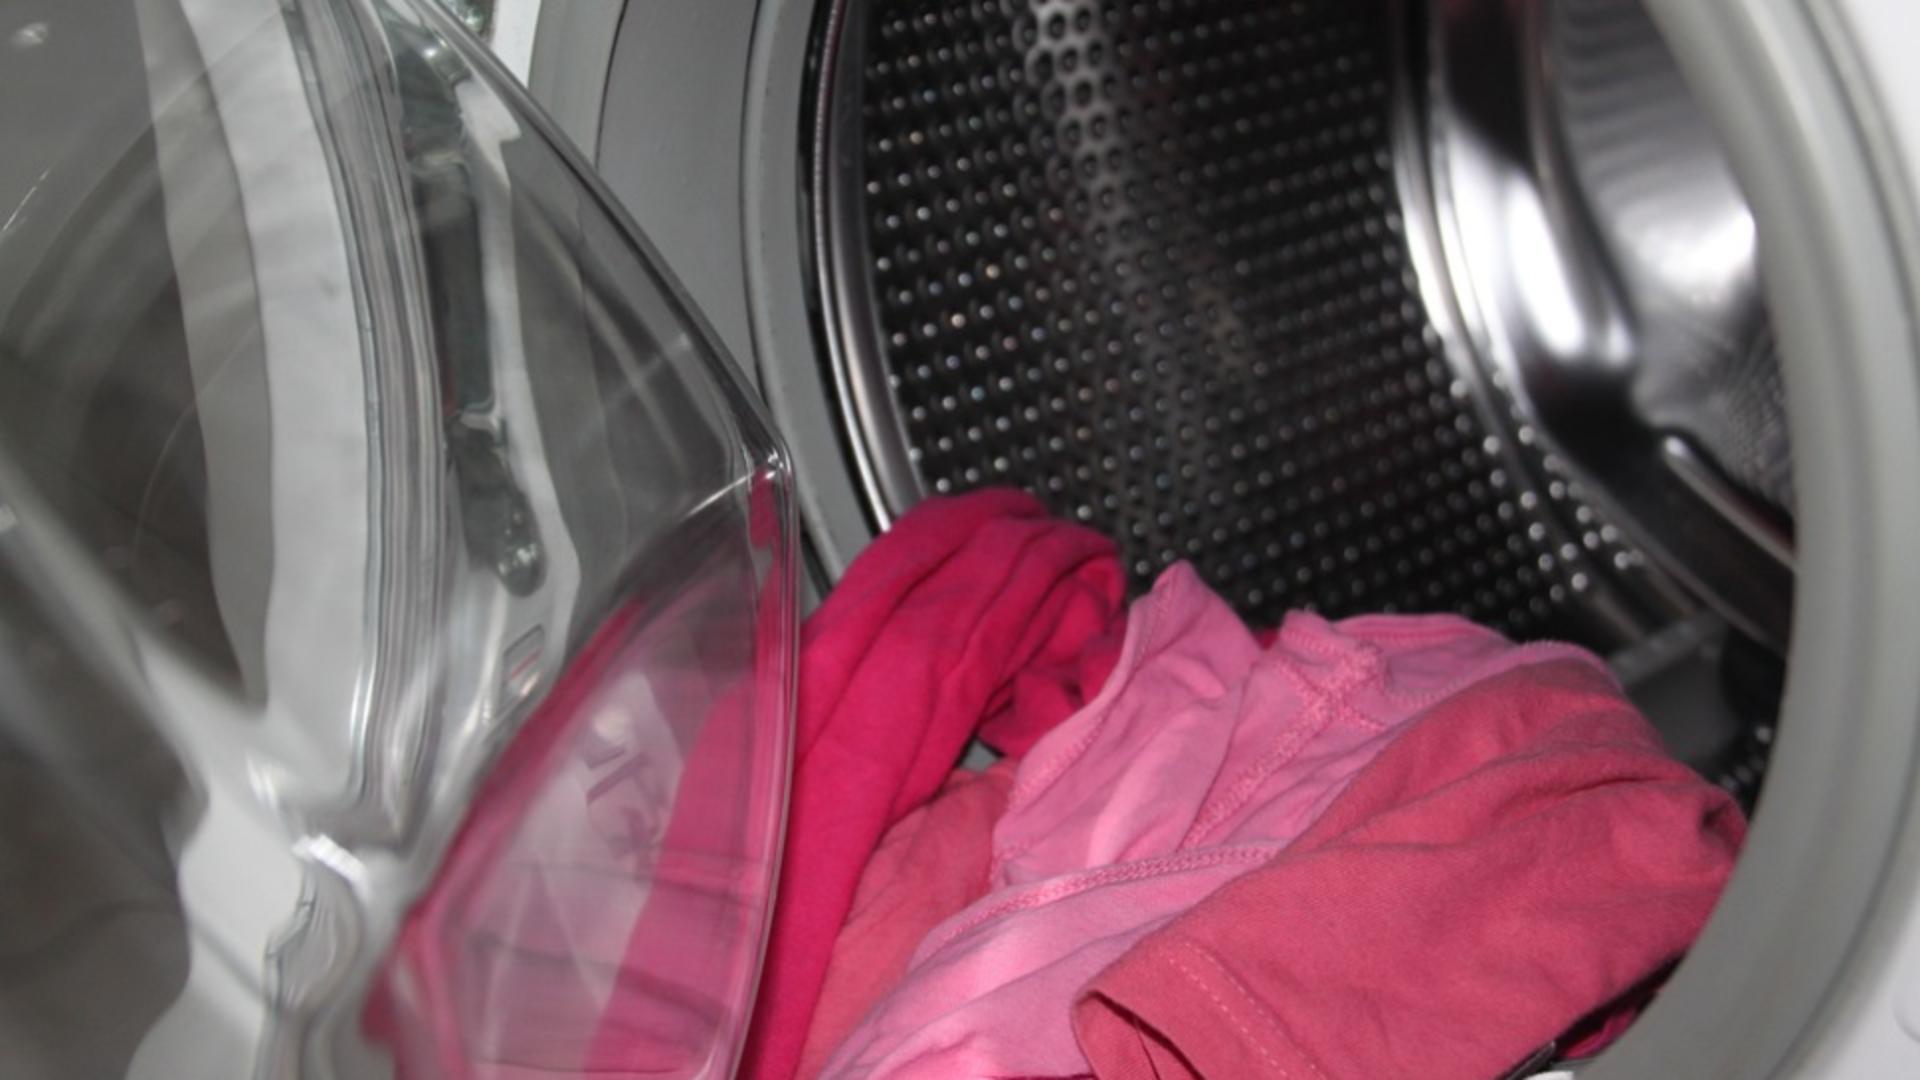 Lucruri pe care poate nu știai că le poți curăța la mașina de spălat